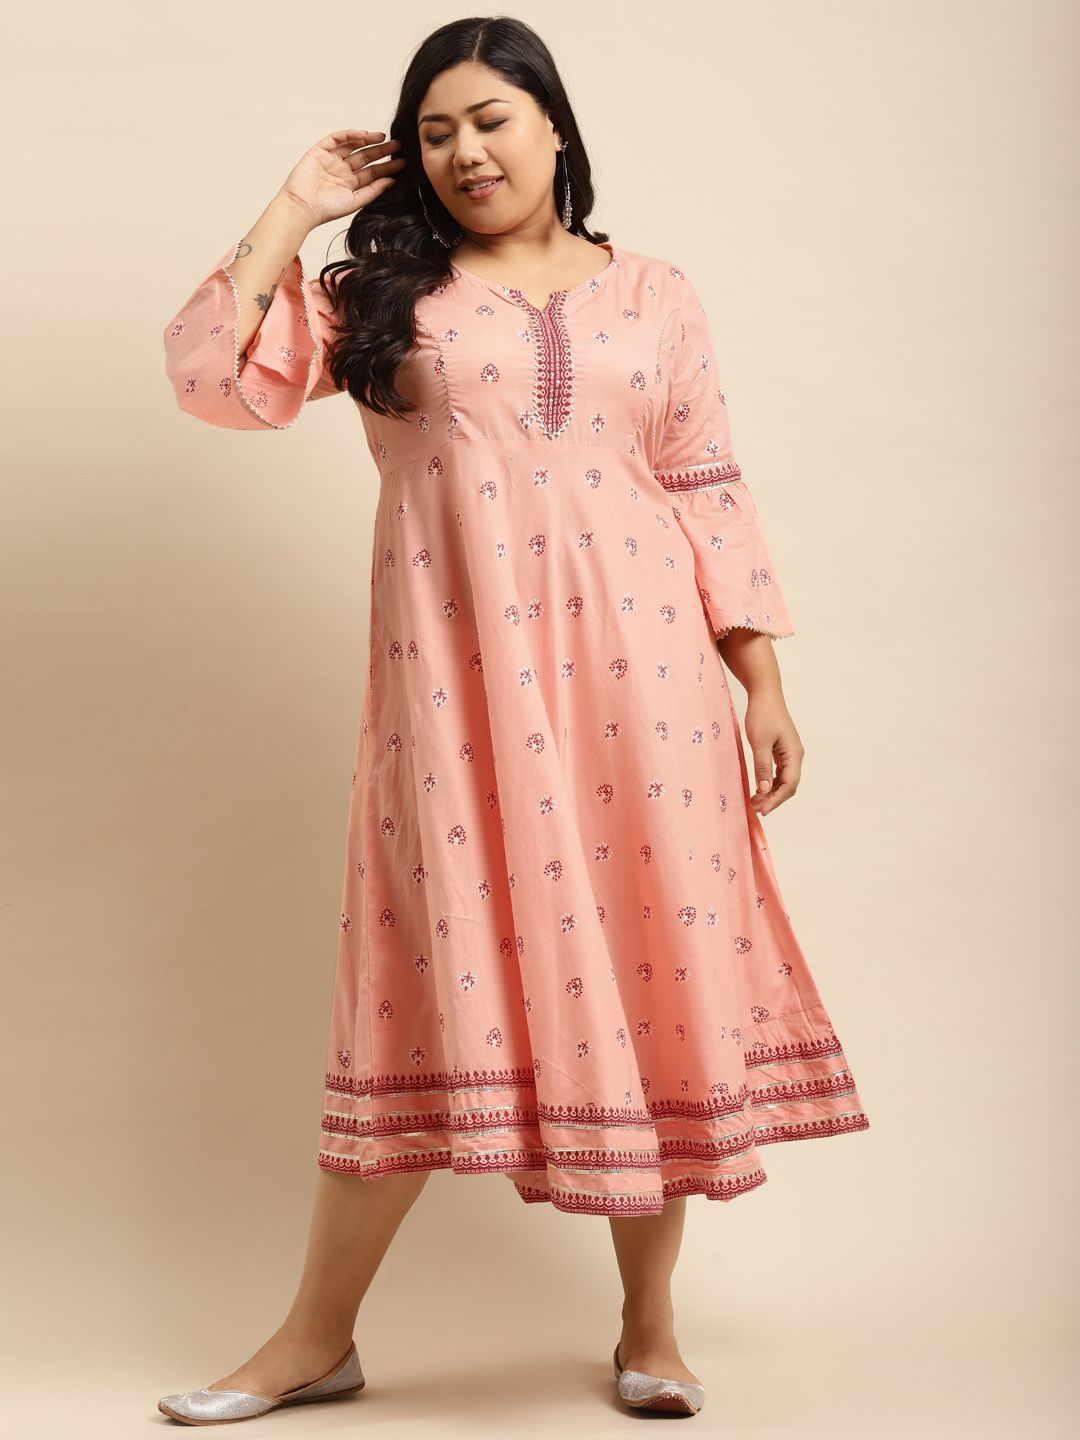 RANGMAYEE Plus Size Peach-Coloured & White Ethnic Motifs Ethnic Maxi Dress Price in India